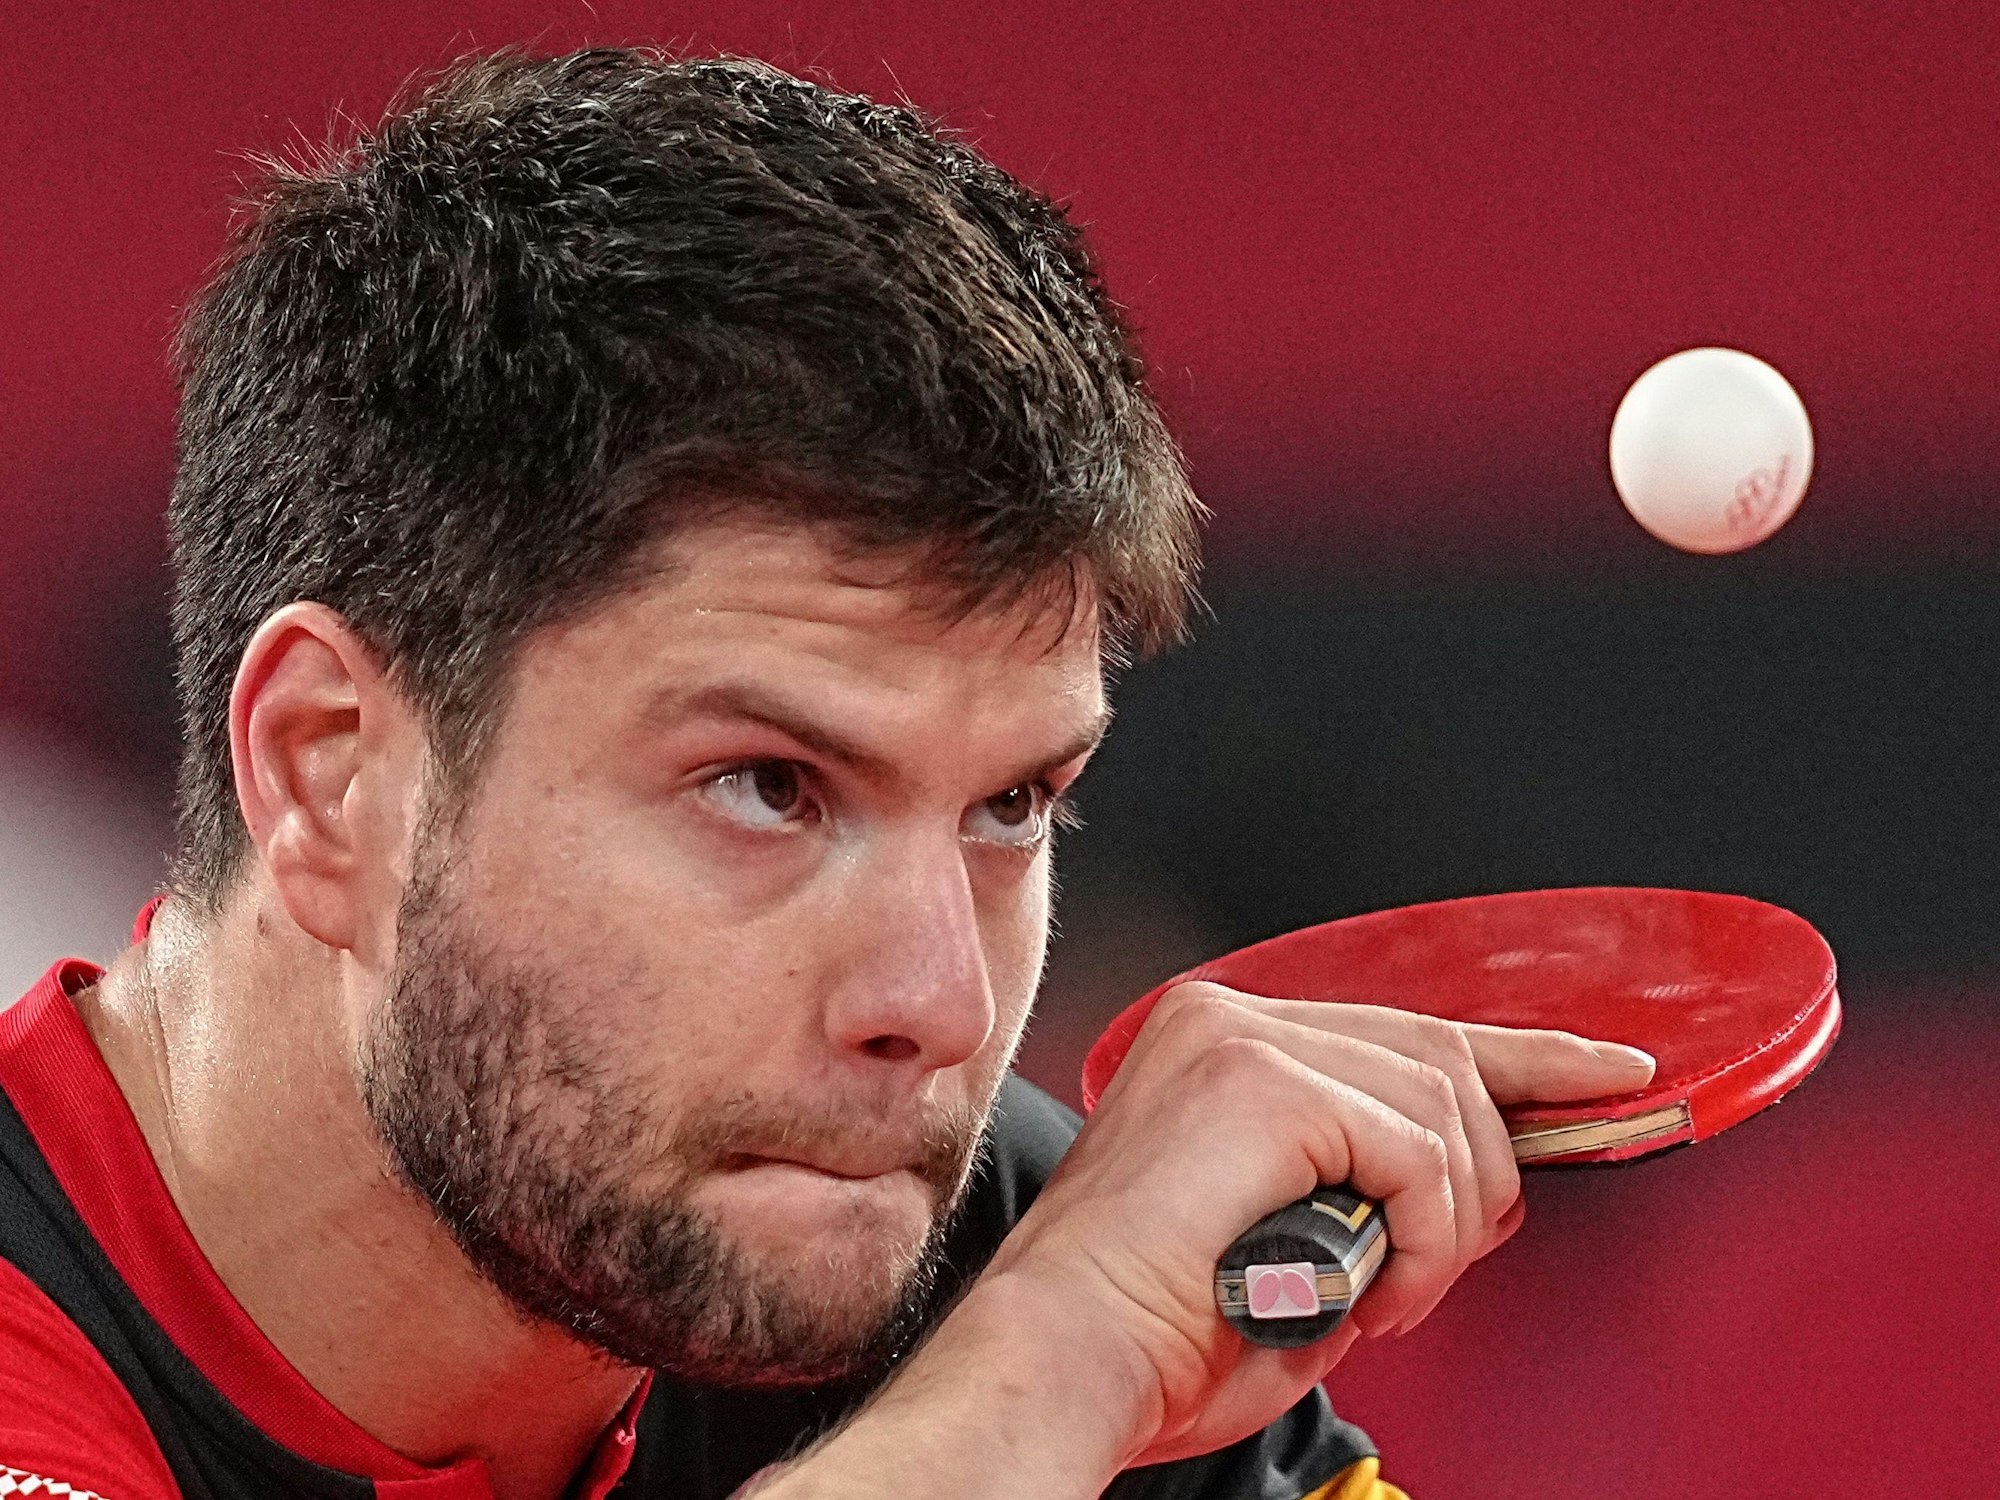 Dimitrij Ovtcharov fokussiert auf den Tischtennis-Ball bei Olympia in Tokio.